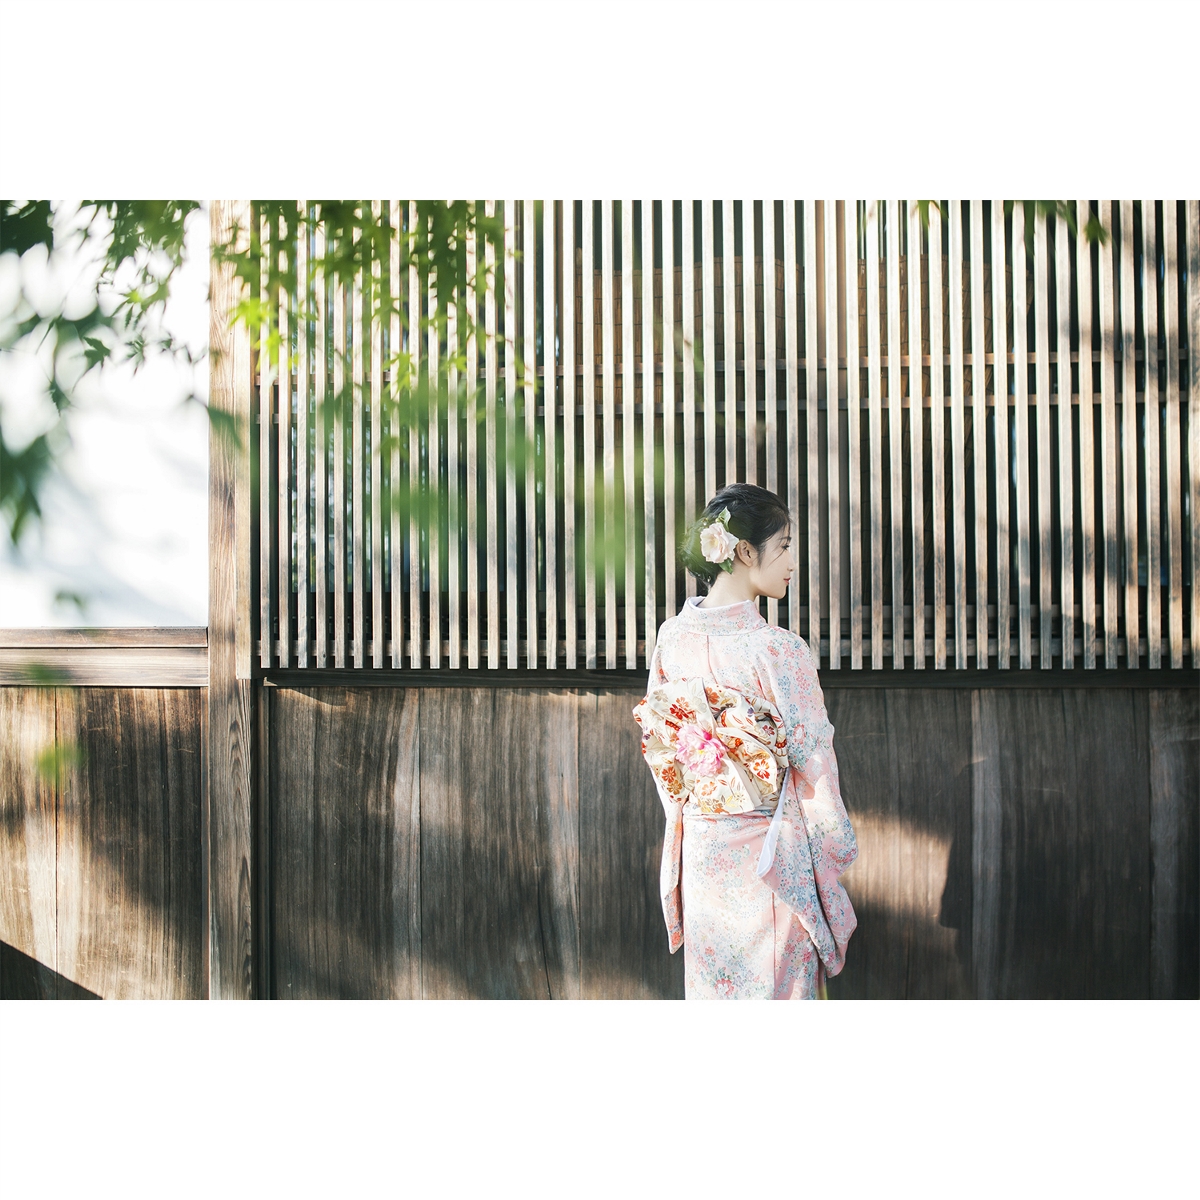 漫步京都—人像摄影